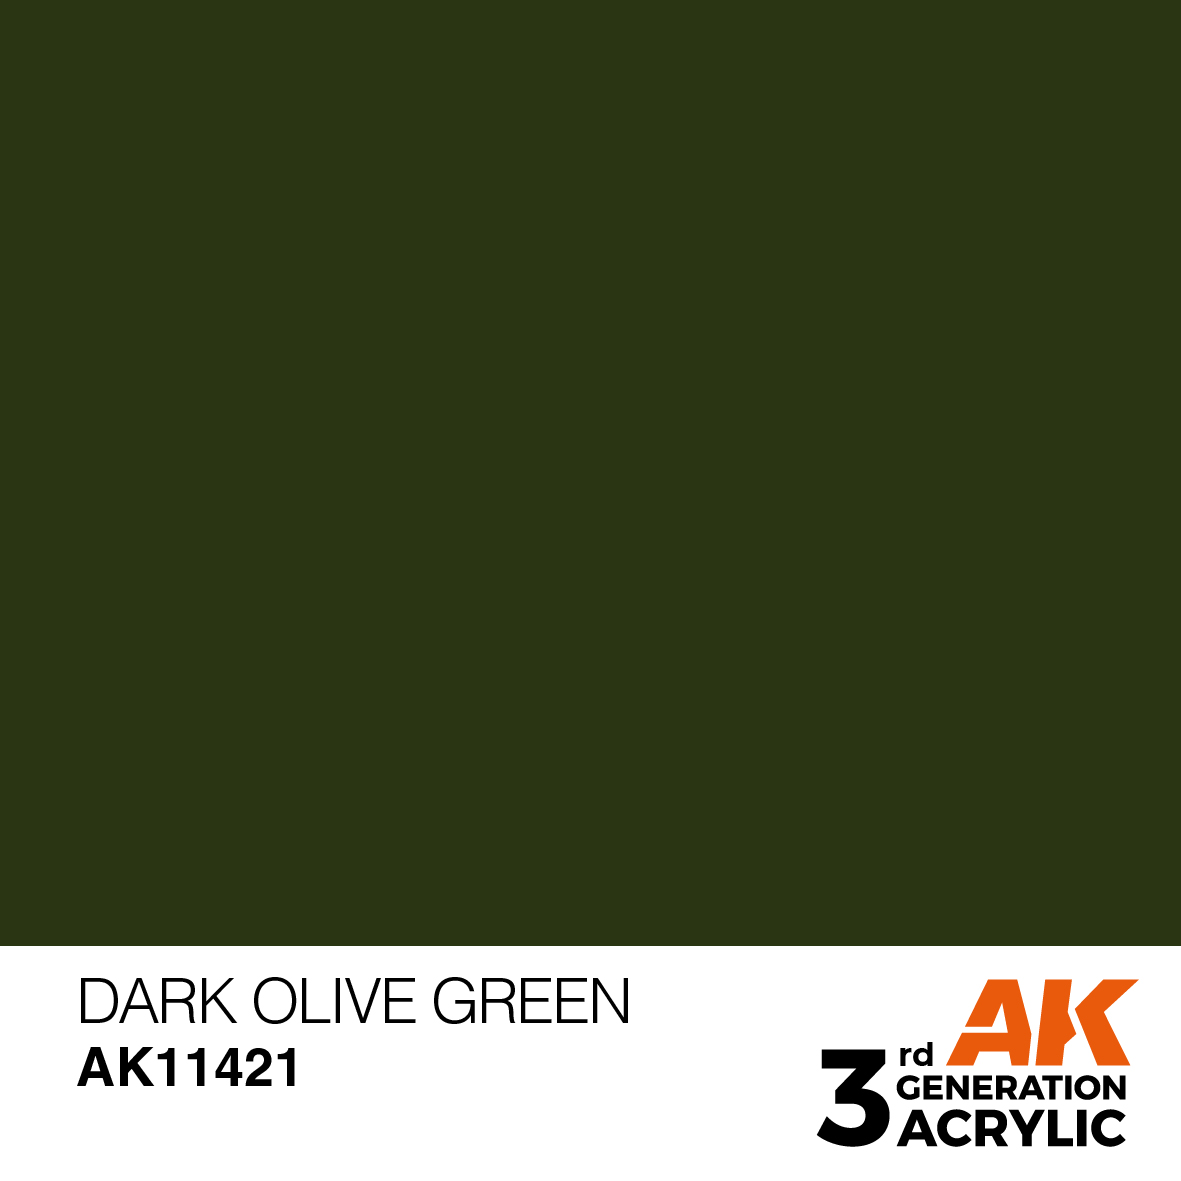 DARK OLIVE GREEN – FIGURES